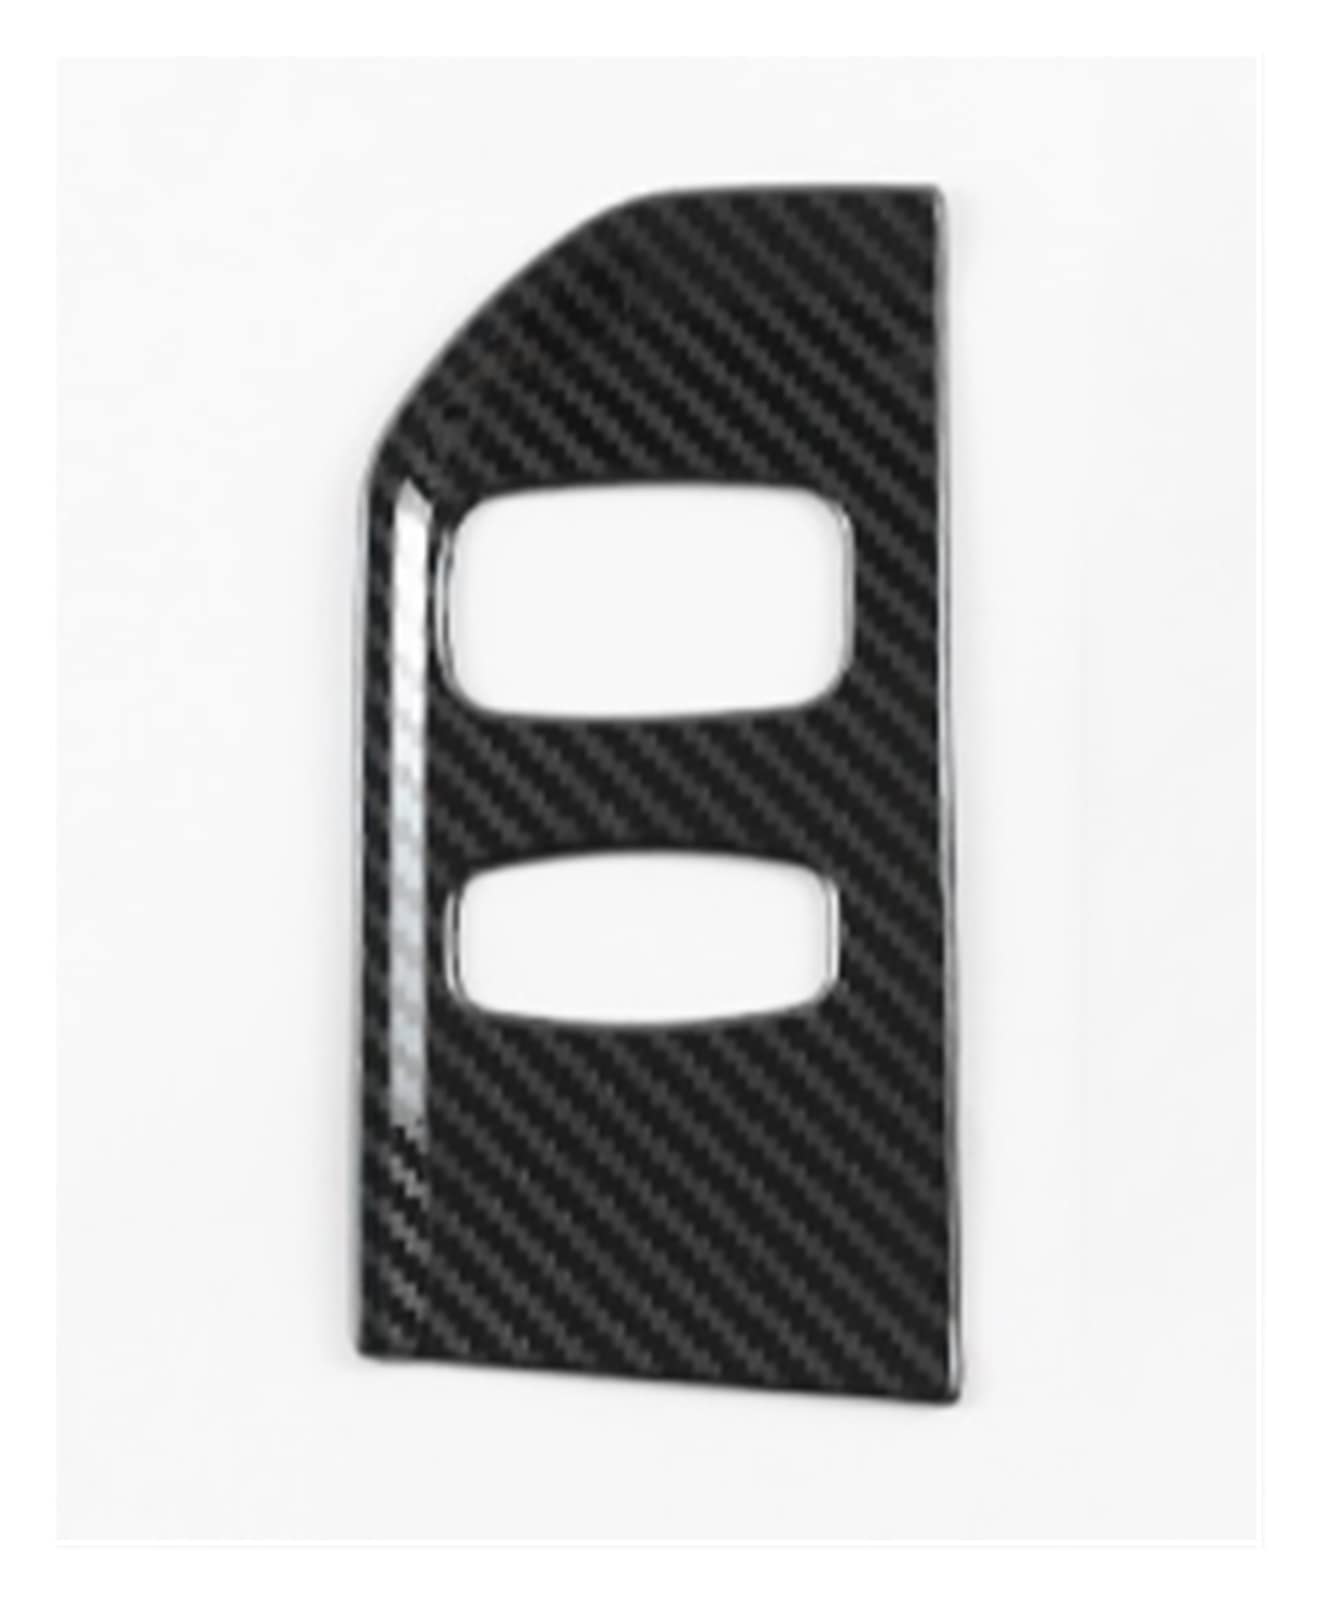 AANAN Edelstahl Auto Styling Konsole Schlüsselloch Panel Rahmen Abdeckung Trim Kompatibel Mit XC60 2013-2017 LHD Innen Zubehör Aufkleber(Carbon fiber) von AANAN